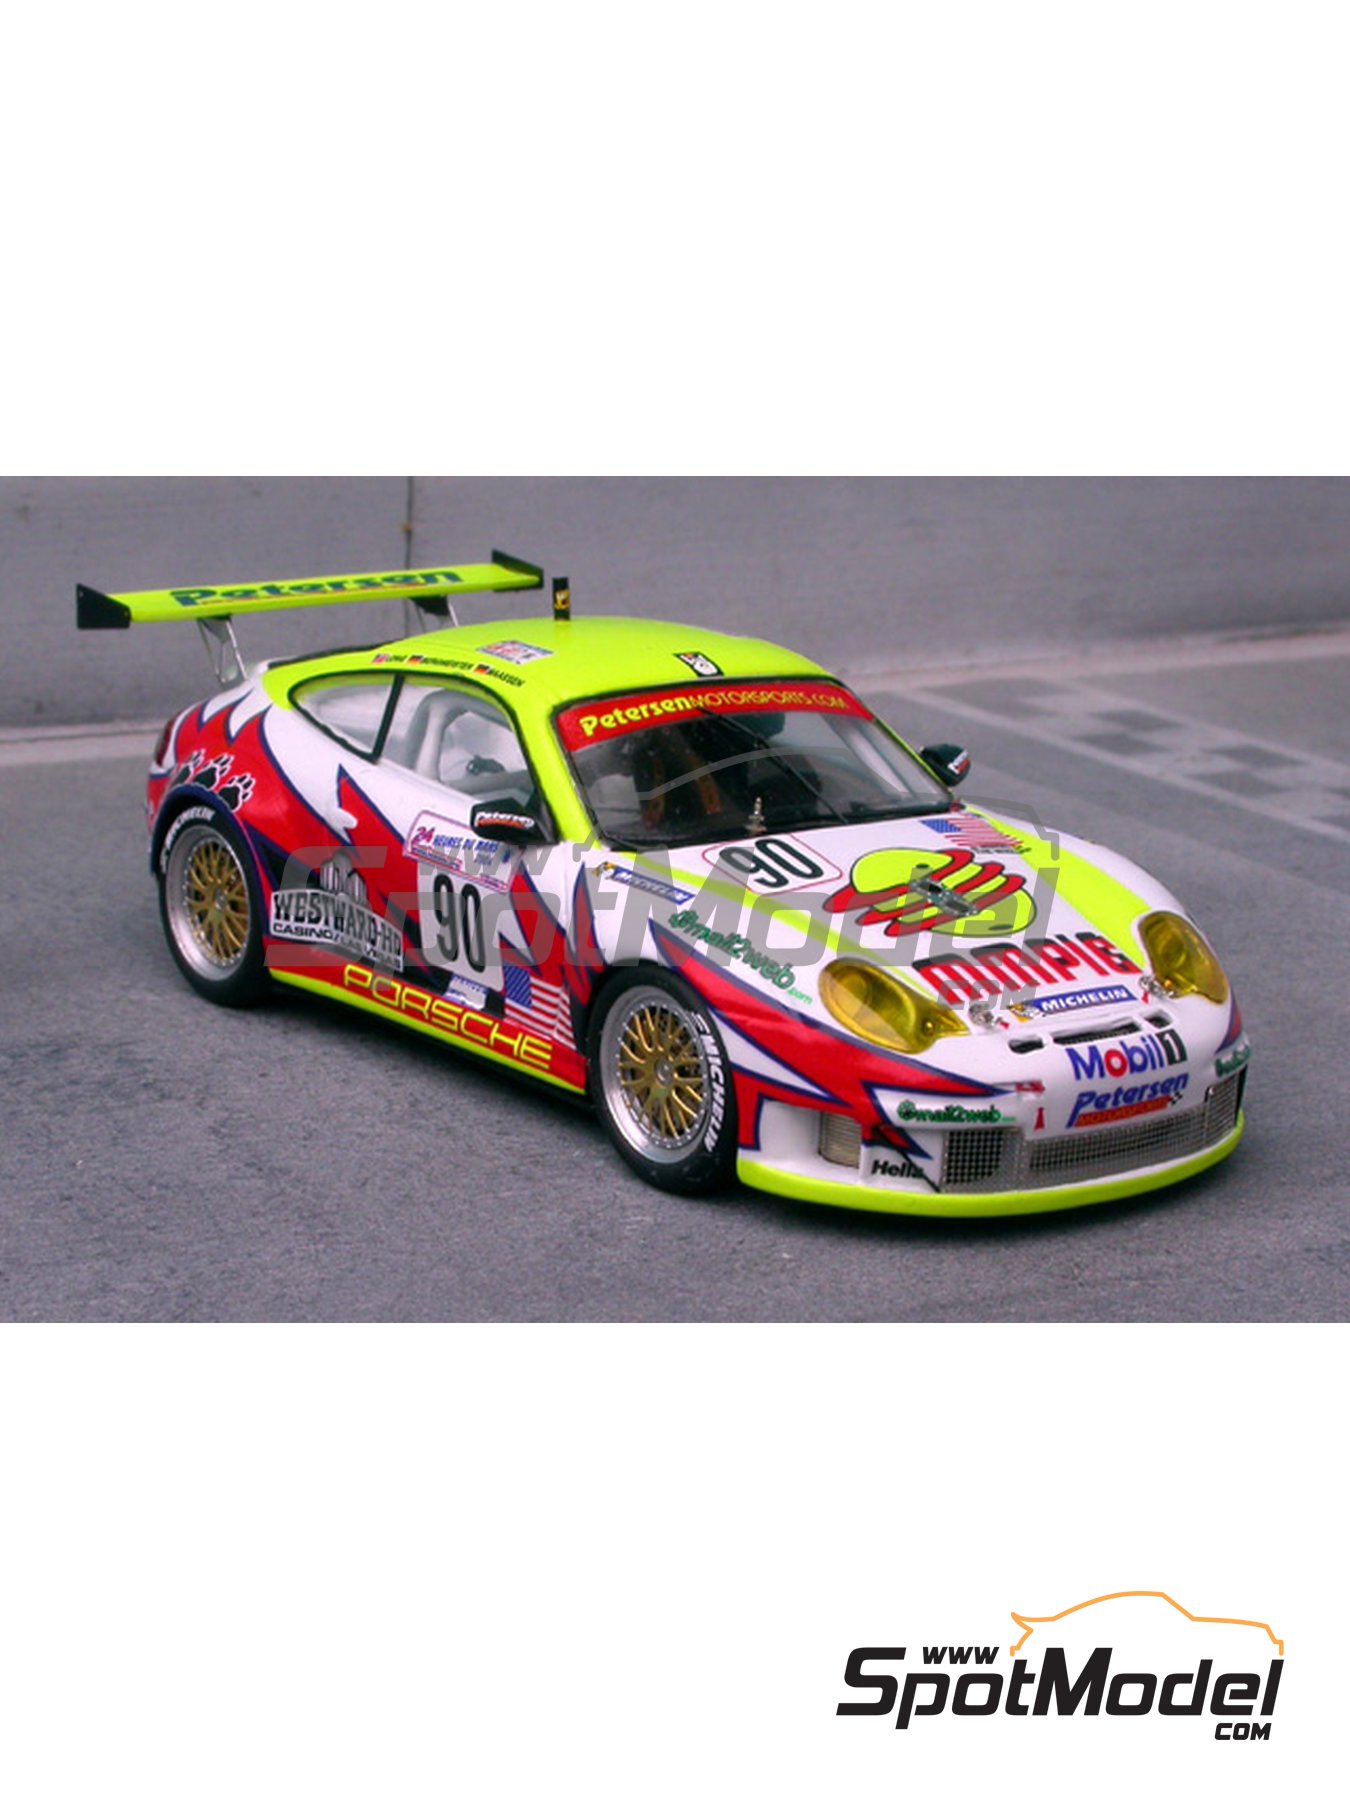 Renaissance Models 080: Car scale model kit 1/43 scale - Porsche